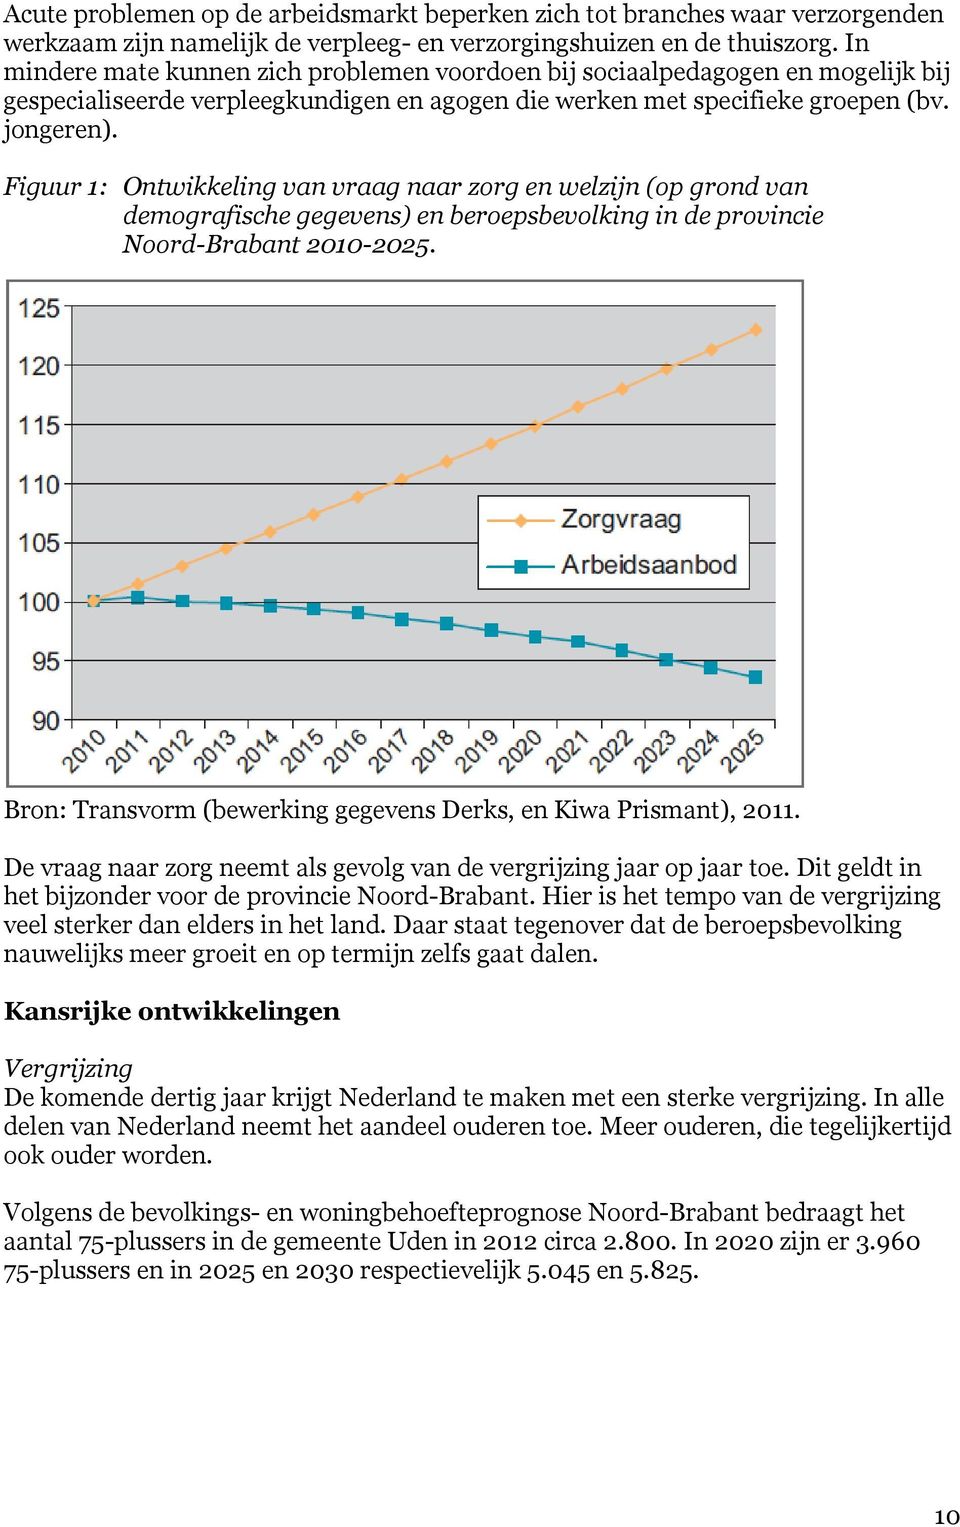 Figuur 1: Ontwikkeling van vraag naar zorg en welzijn (op grond van demografische gegevens) en beroepsbevolking in de provincie Noord-Brabant 2010-2025.